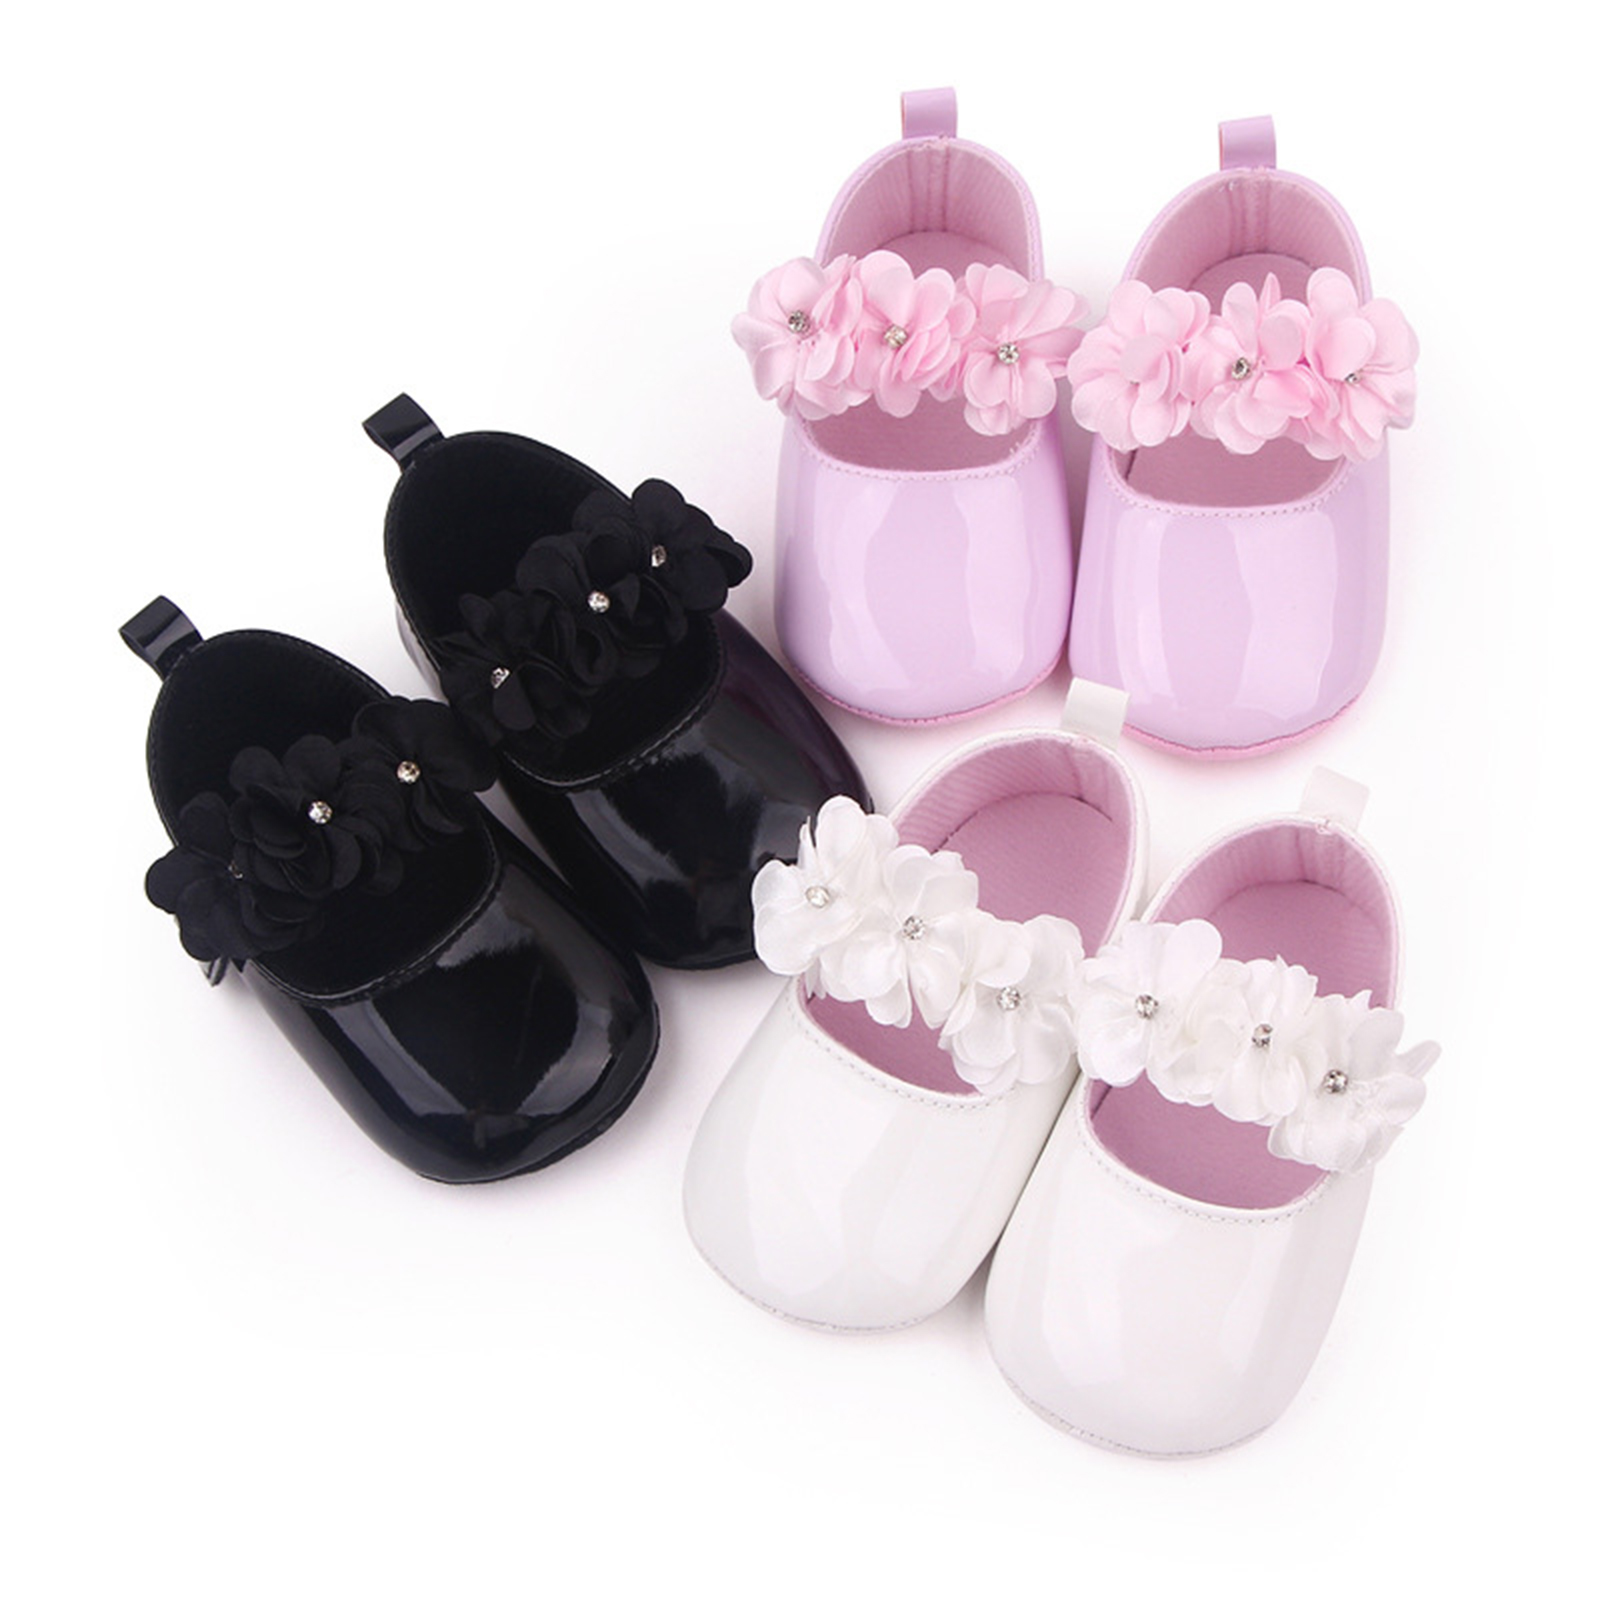 Tre paia di mocassini con fiori su sfondo bianco, in nero, rosa e bianco